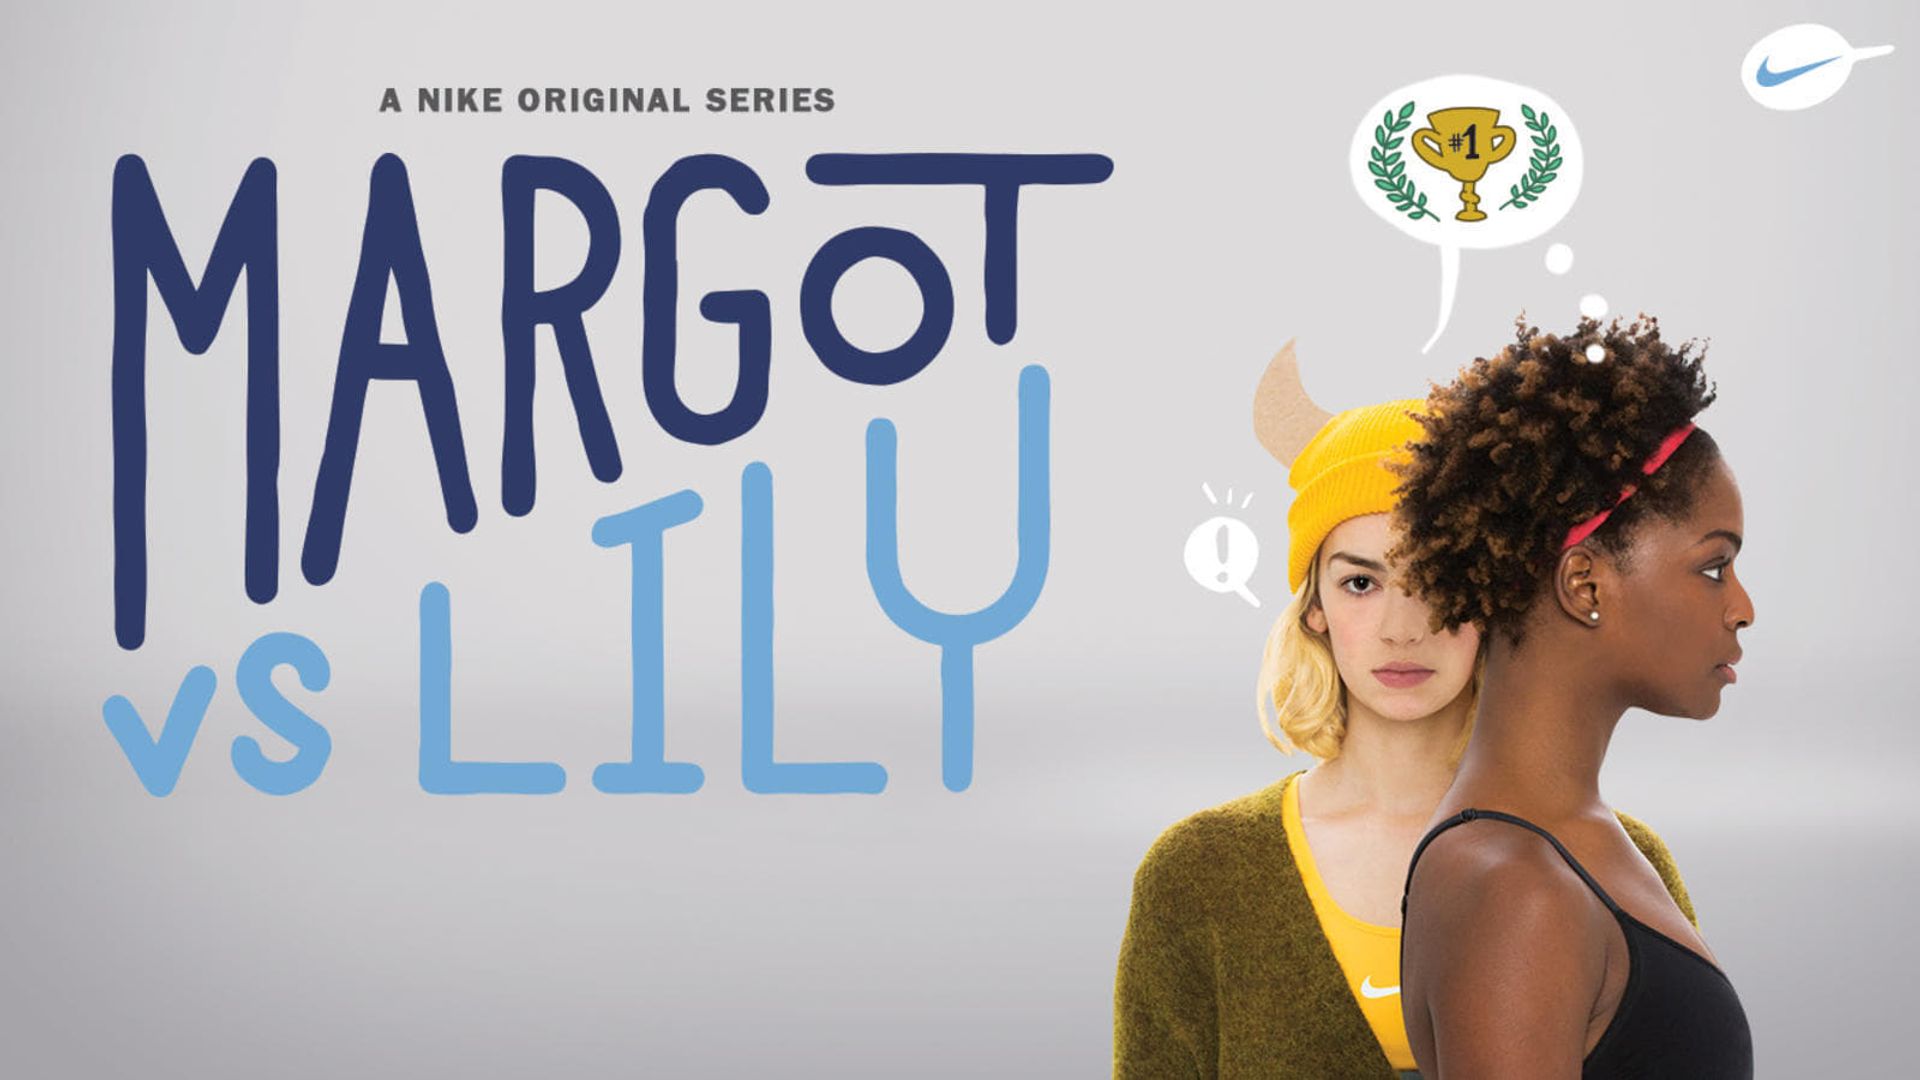 Margot vs. Lily background